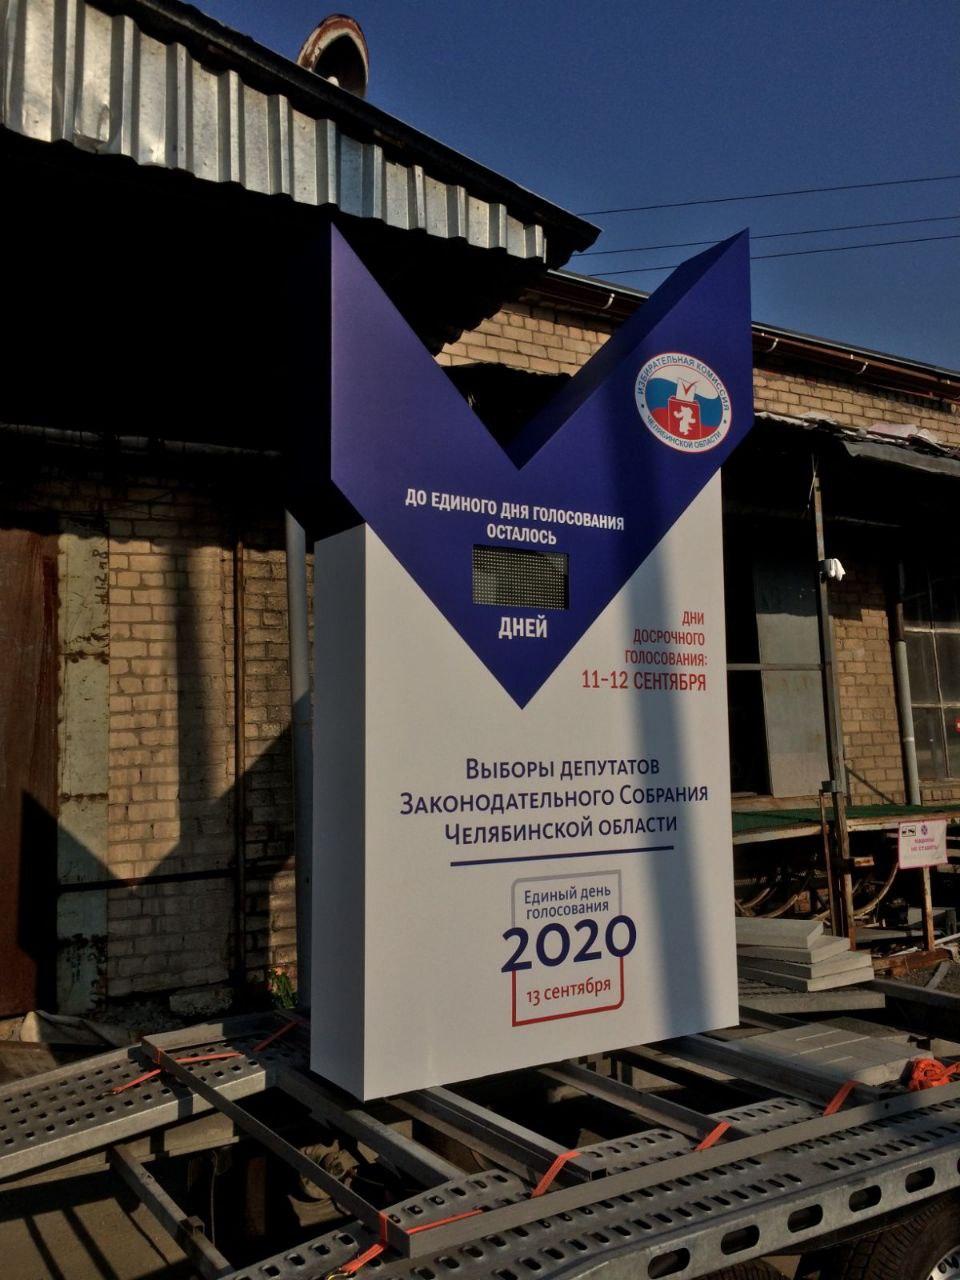 В Челябинске установят стелу с обратным отсчётом времени